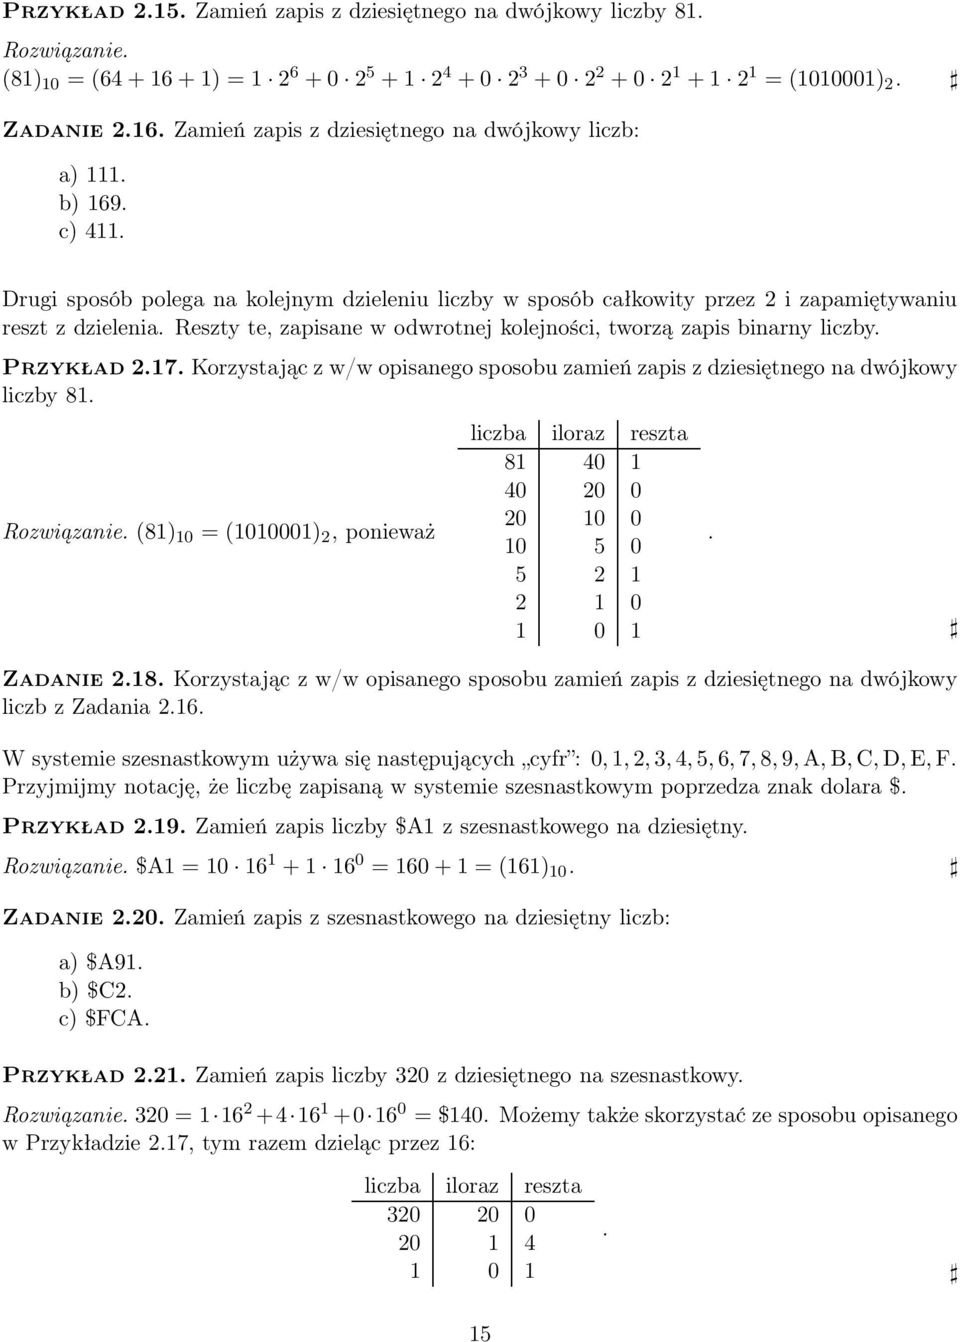 Przykład 2.17. Korzystając z w/w opisanego sposobu zamień zapis z dziesiętnego na dwójkowy liczby 81. Rozwiązanie.